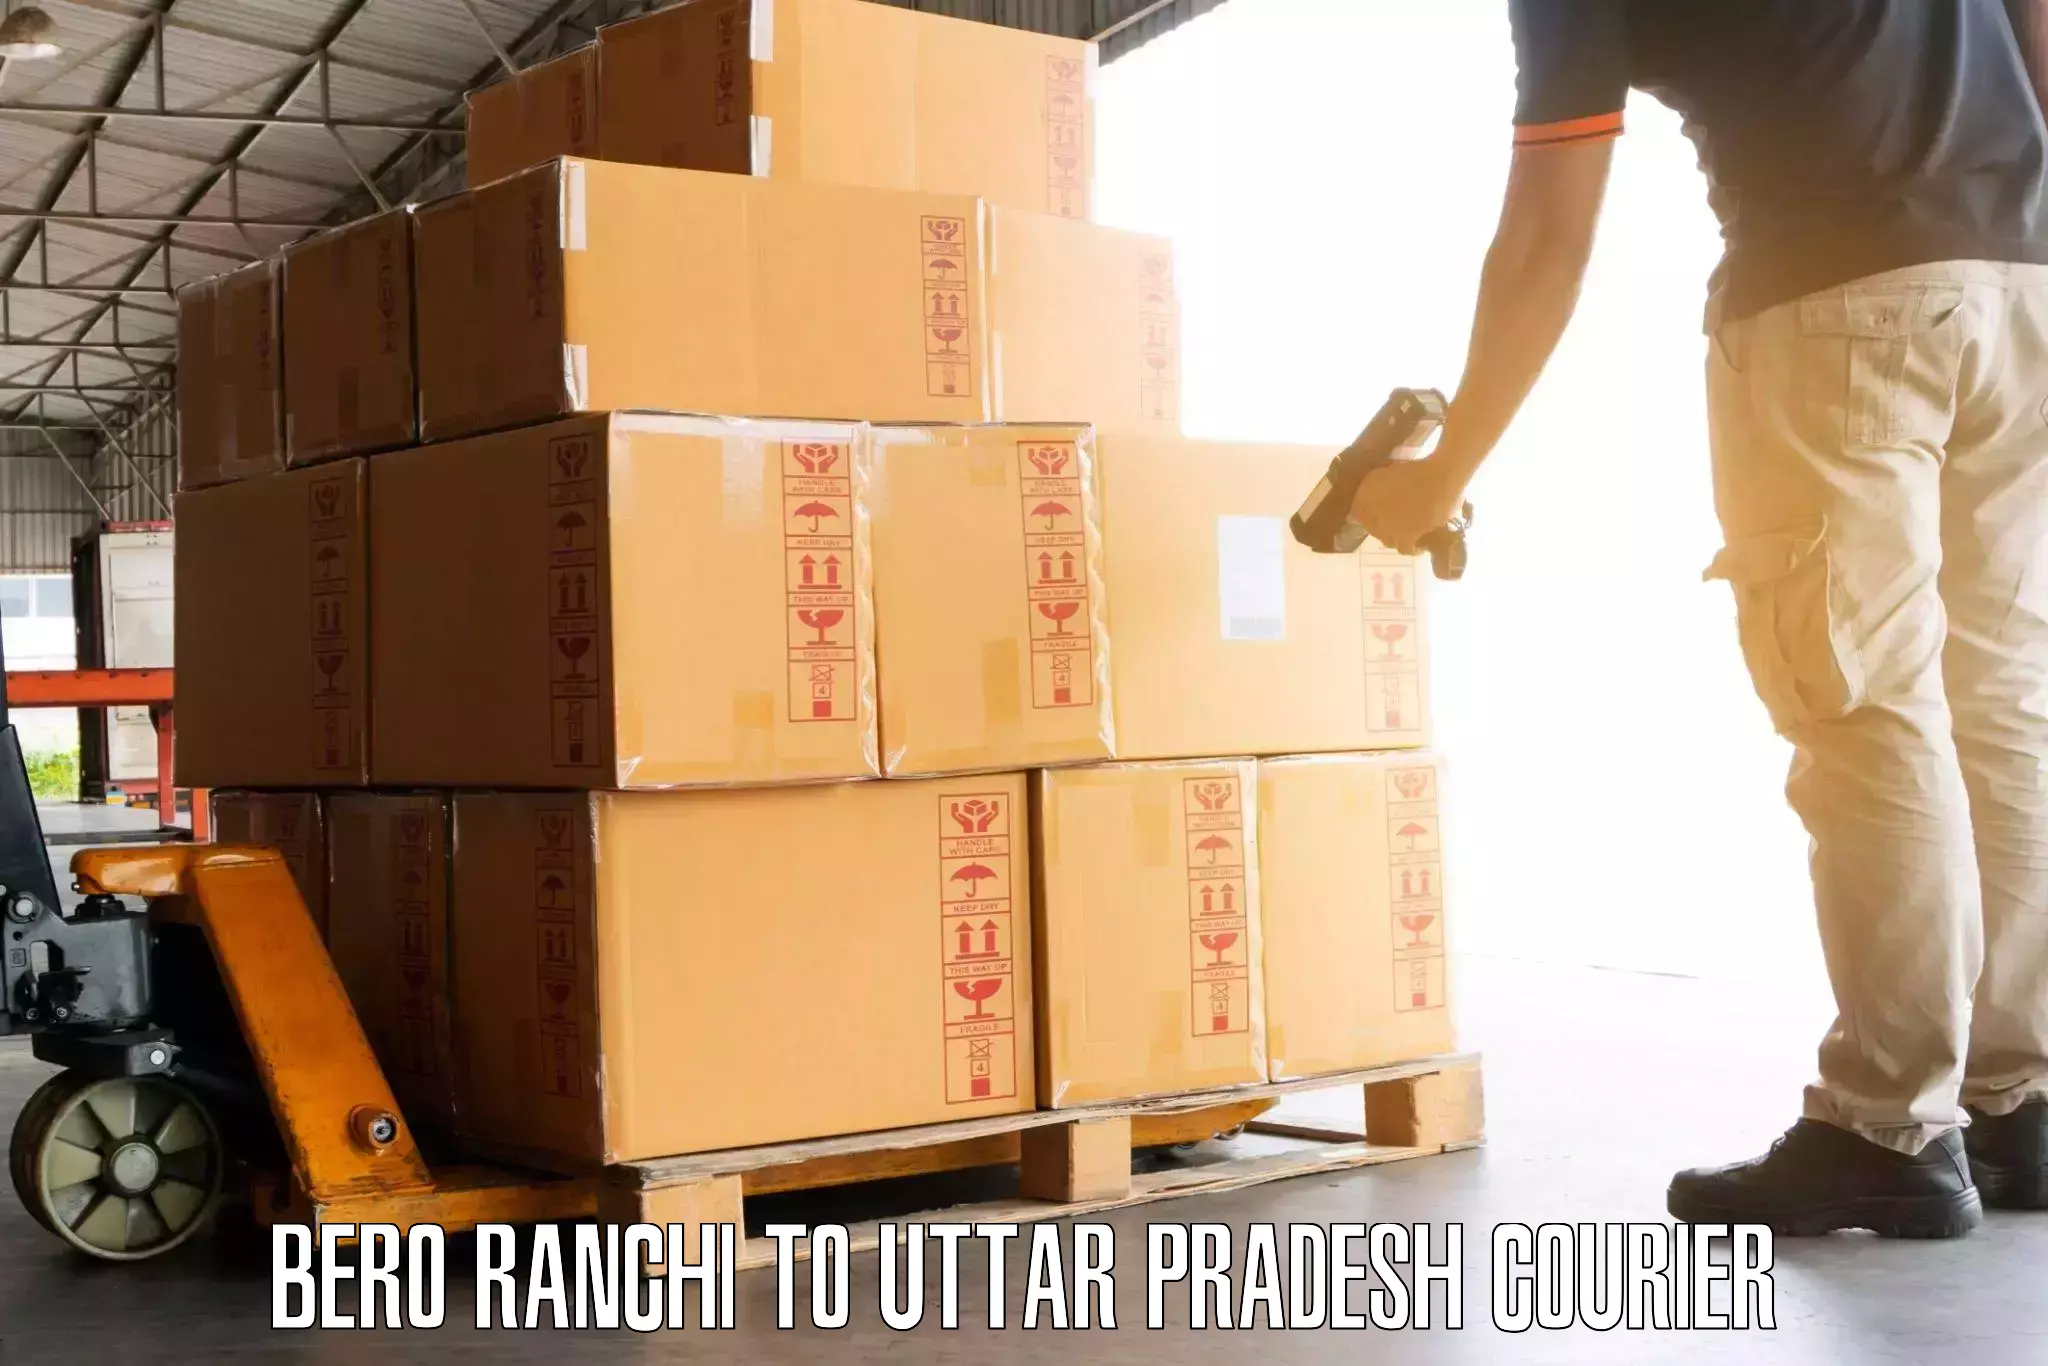 Efficient luggage delivery in Bero Ranchi to Afzalgarh